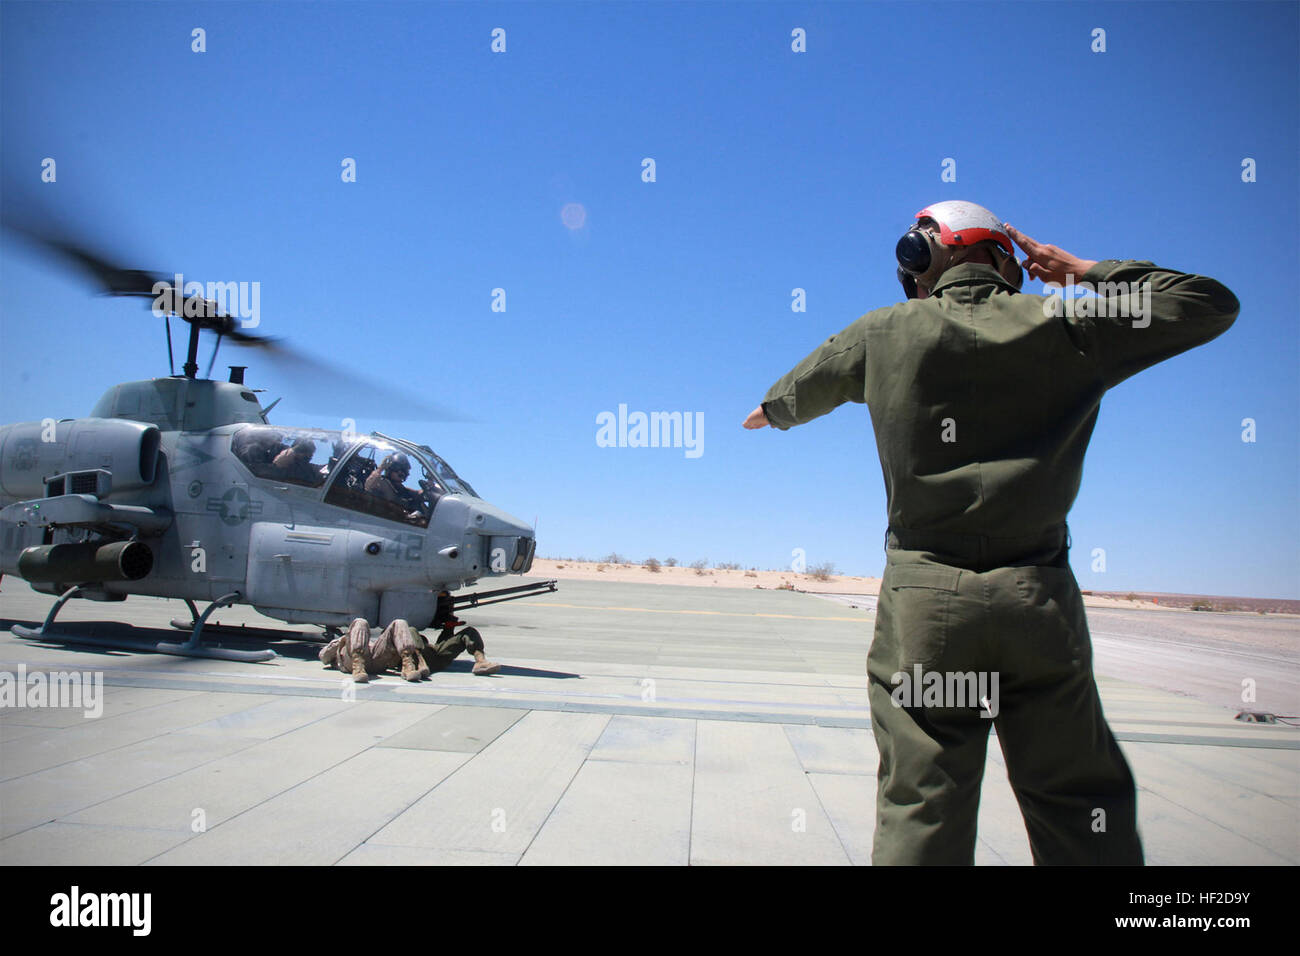 Verordnung Marines im Marine Corps Air Ground Combat Center Twentynine Palms kommunizieren mit Hand-Arm-Signale während der Scharfschaltung oder de-Bewaffnung der AH-1 Super Cobra Hubschrauber, wie der Motor und Rotor Lärm zu laut hörbare Befehle zu hören ist.  Ordie Teammitglieder arm M197 Gatling-Kanone und Piloten legen ihre Hände hoch über ihre Köpfe hinweg zeigen, dass sie nicht versehentlich irgendwelche Tasten während der Scharfschaltung Verfahren treffen. Ordies Arm Cobras an ITX 130613-M-IR064-011 Stockfoto